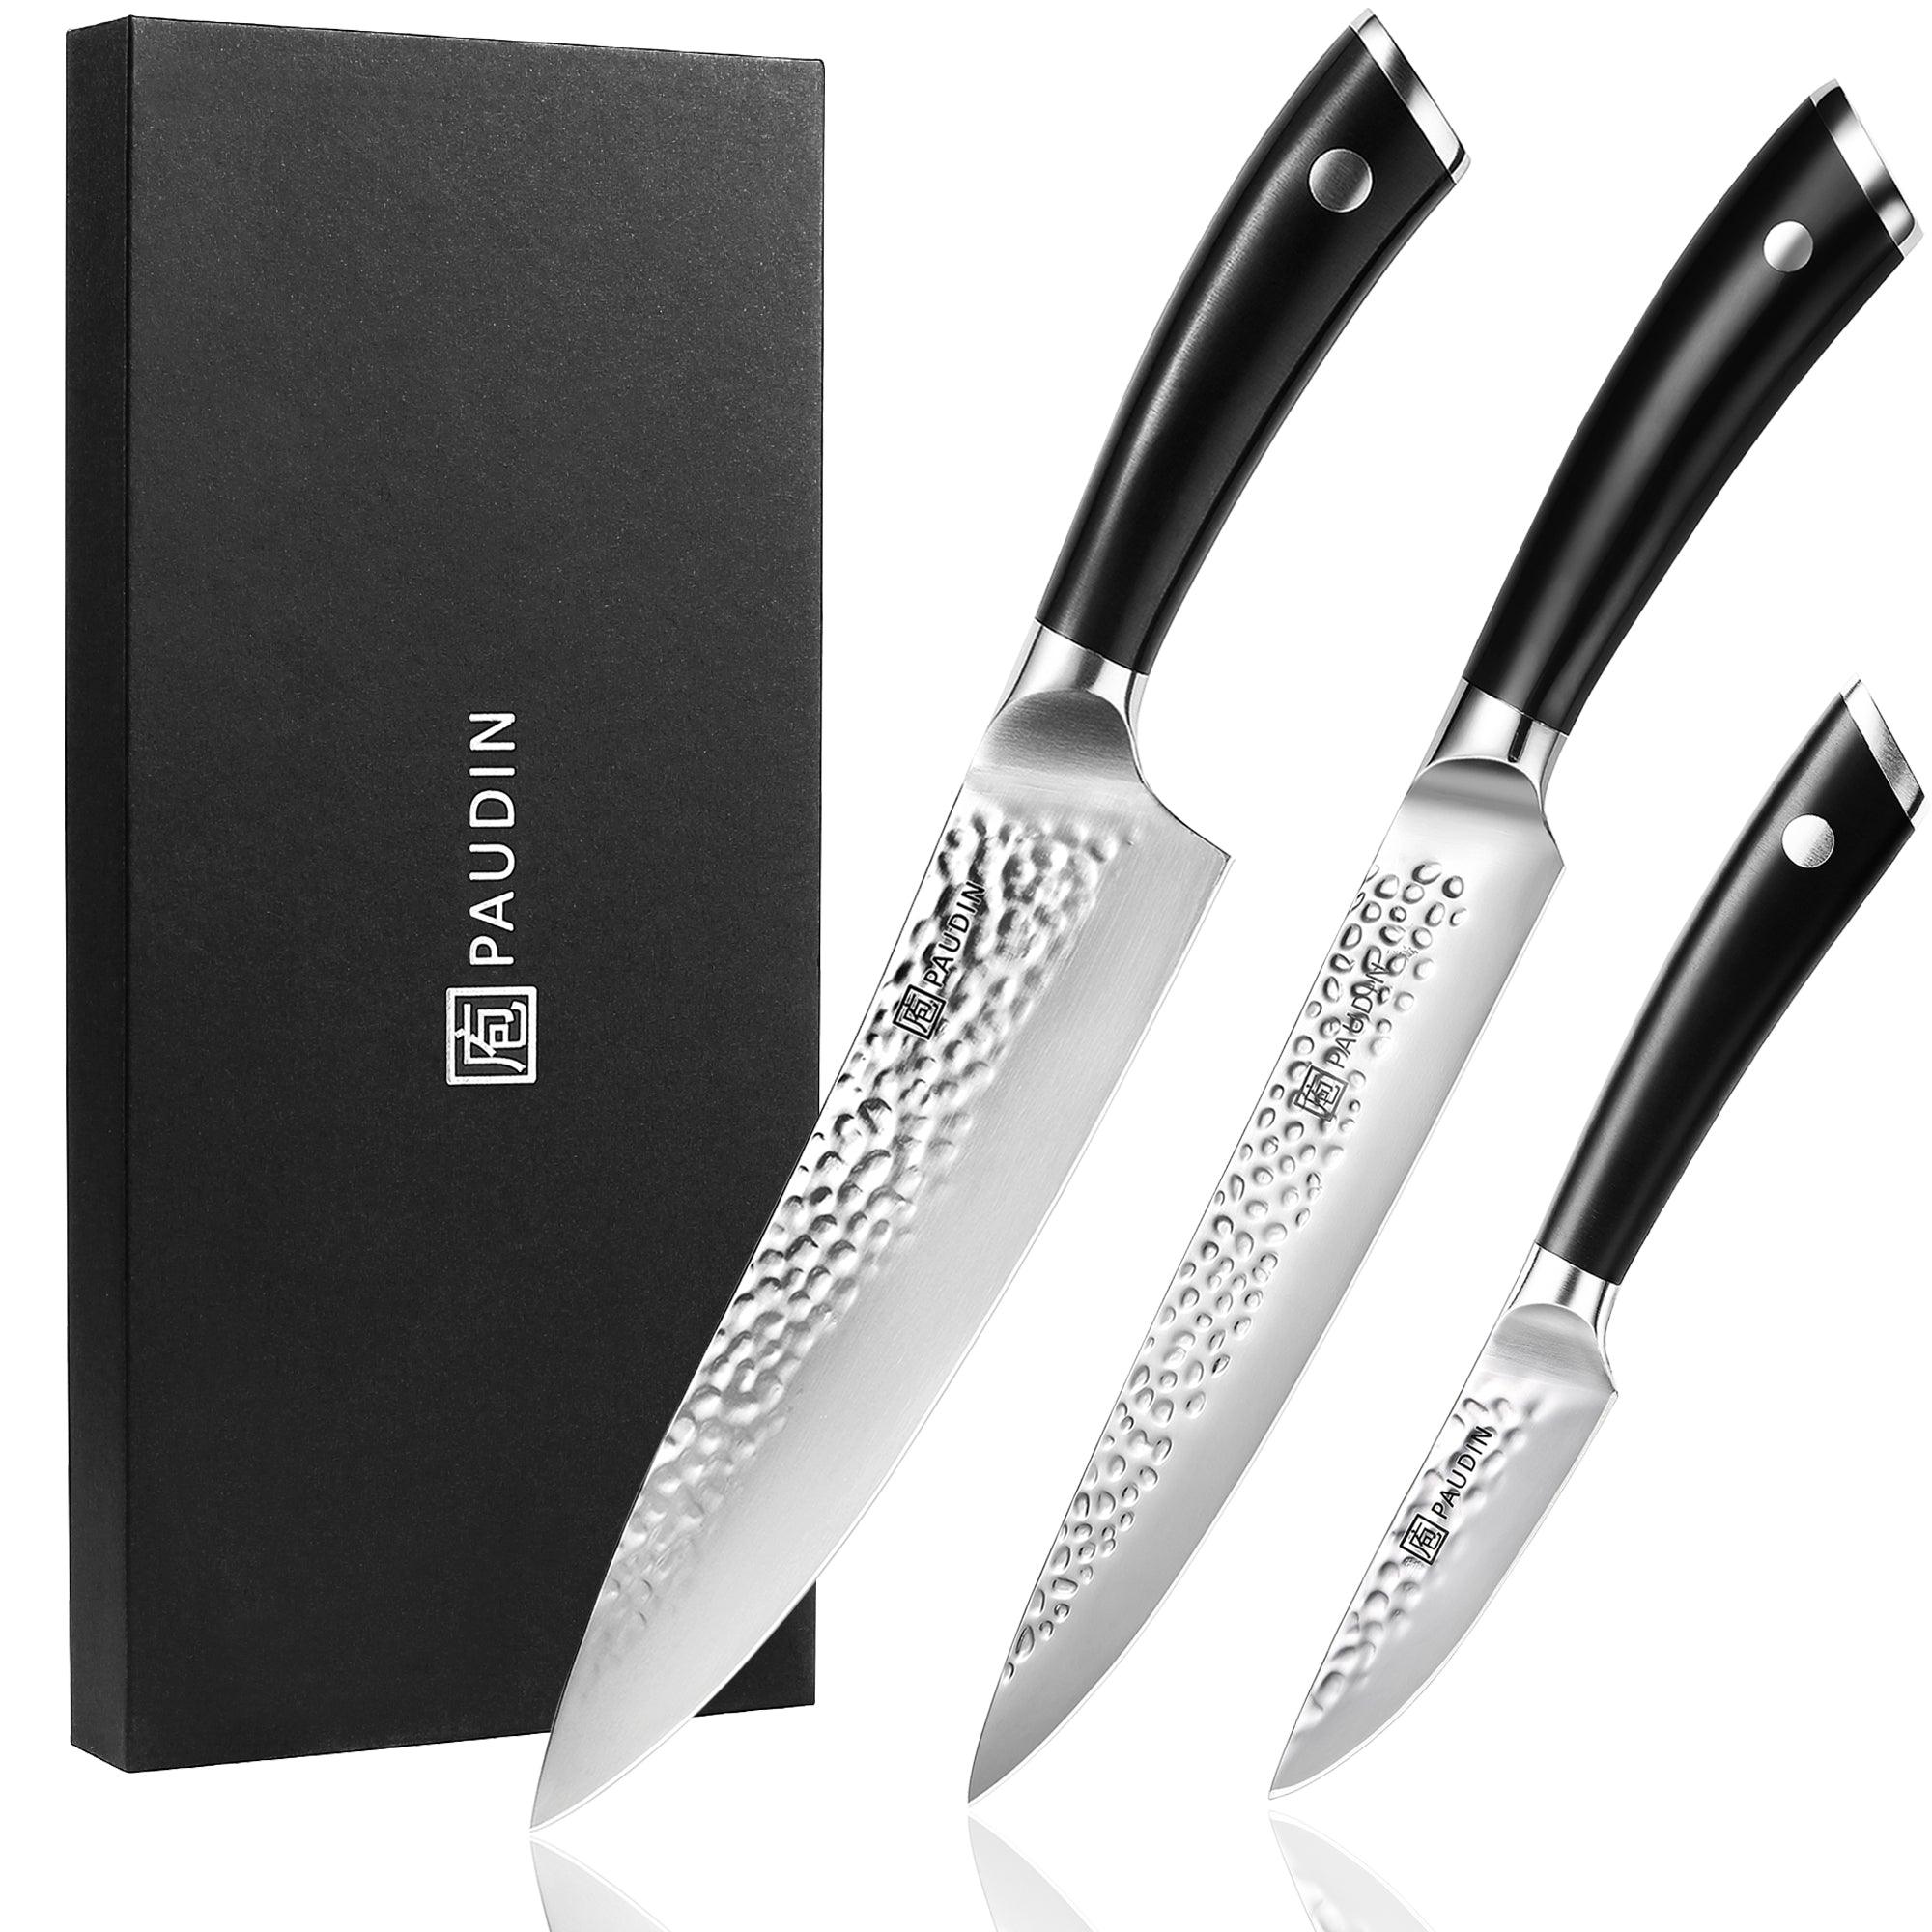 Paudin NS2 3 Pcs Chef Knives Set